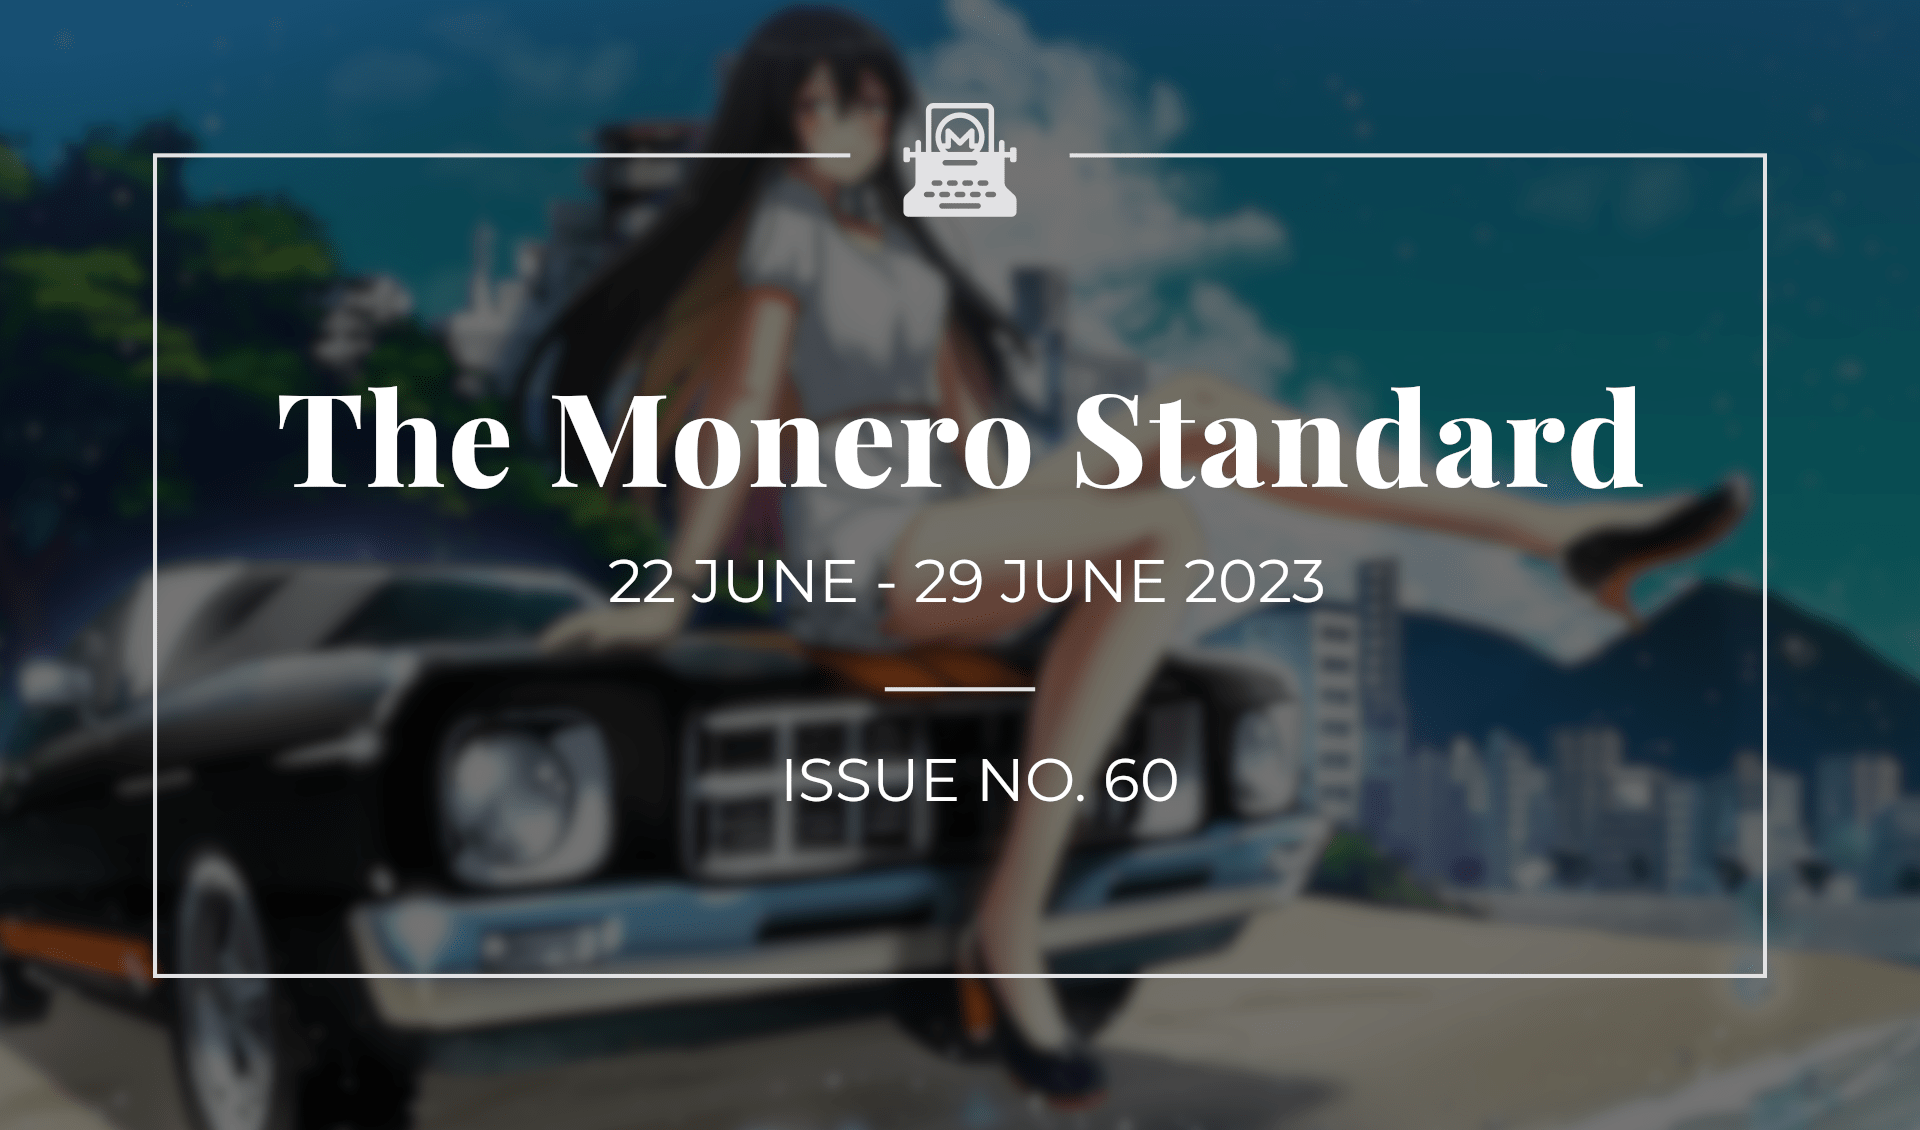 The Monero Standard #60: 22 June 2023 - 29 June 2023